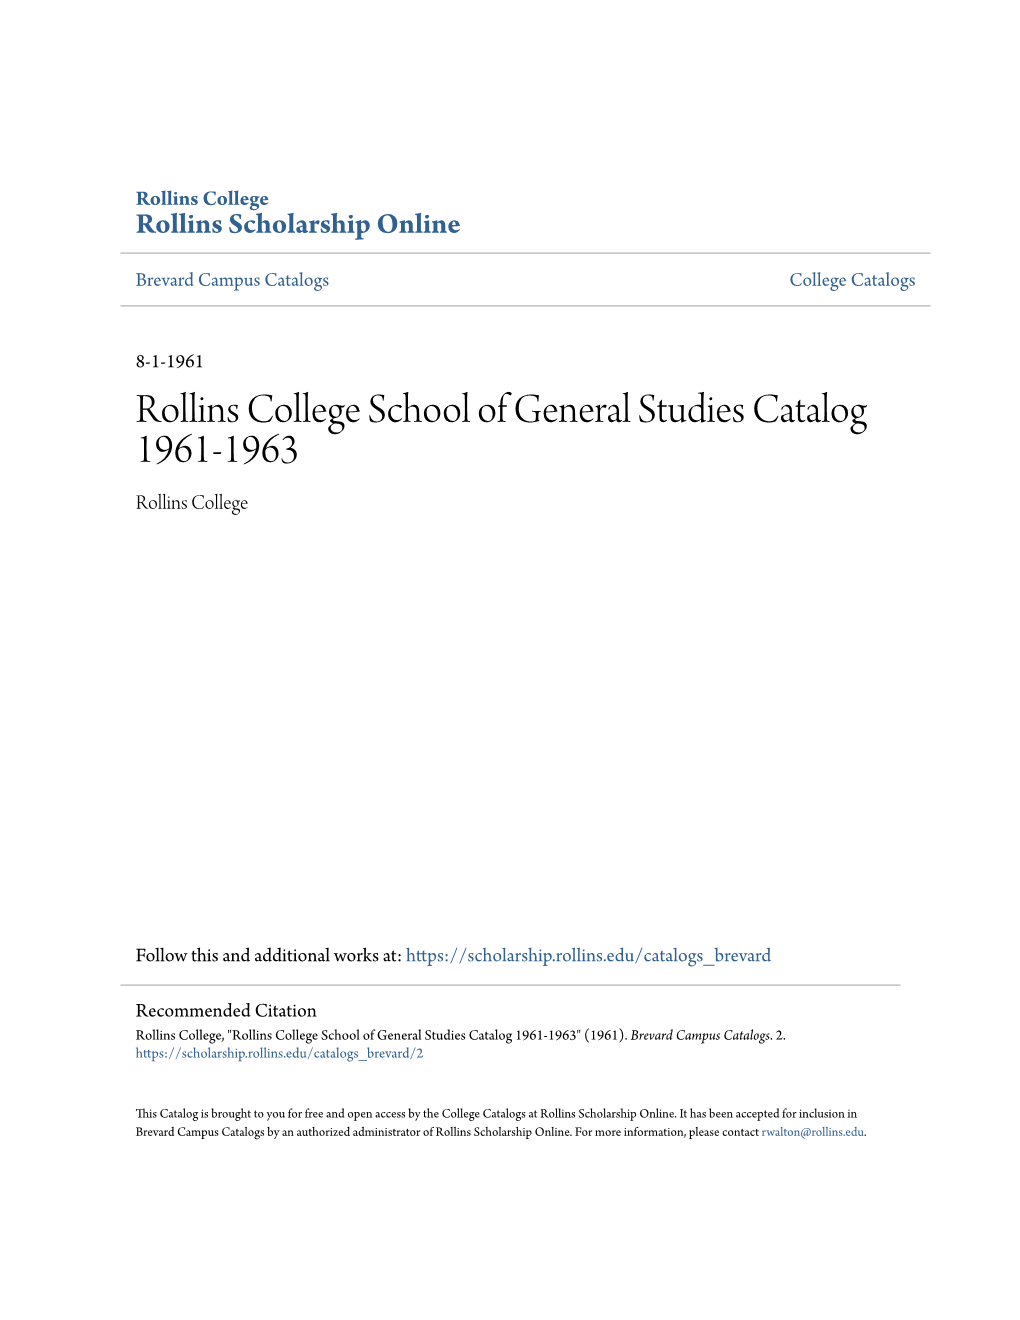 Rollins College School of General Studies Catalog 1961-1963 Rollins College